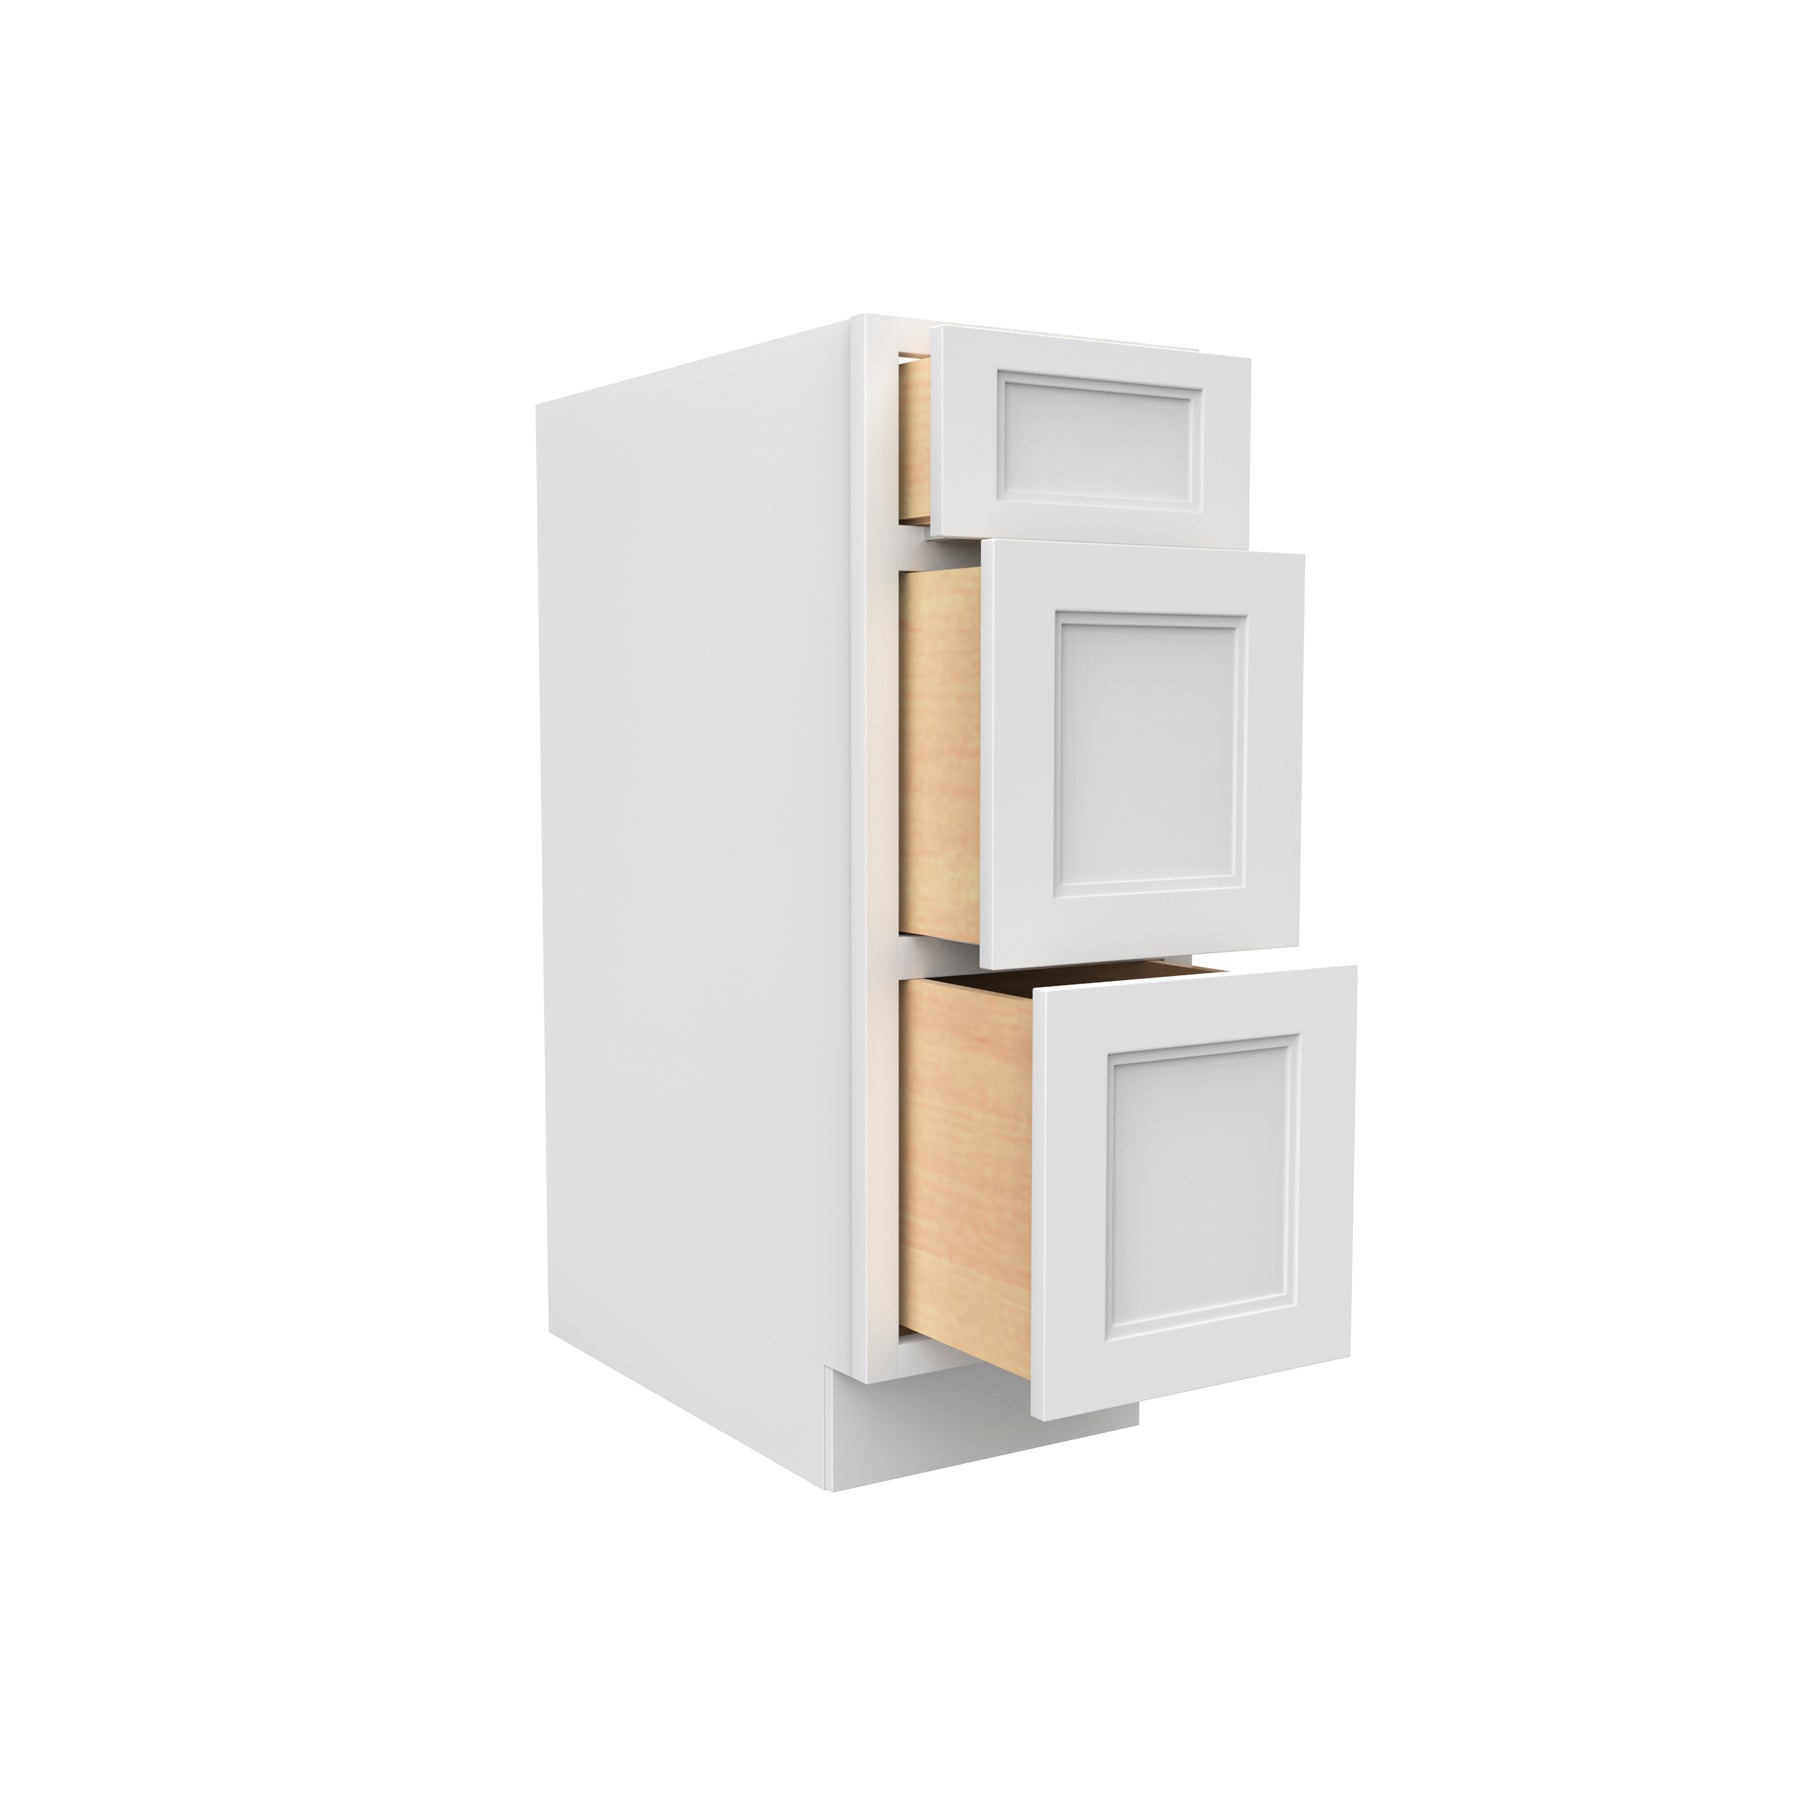 Fashion White - 3 Drawer Base Cabinet | 12"W x 34.5"H x 24"D